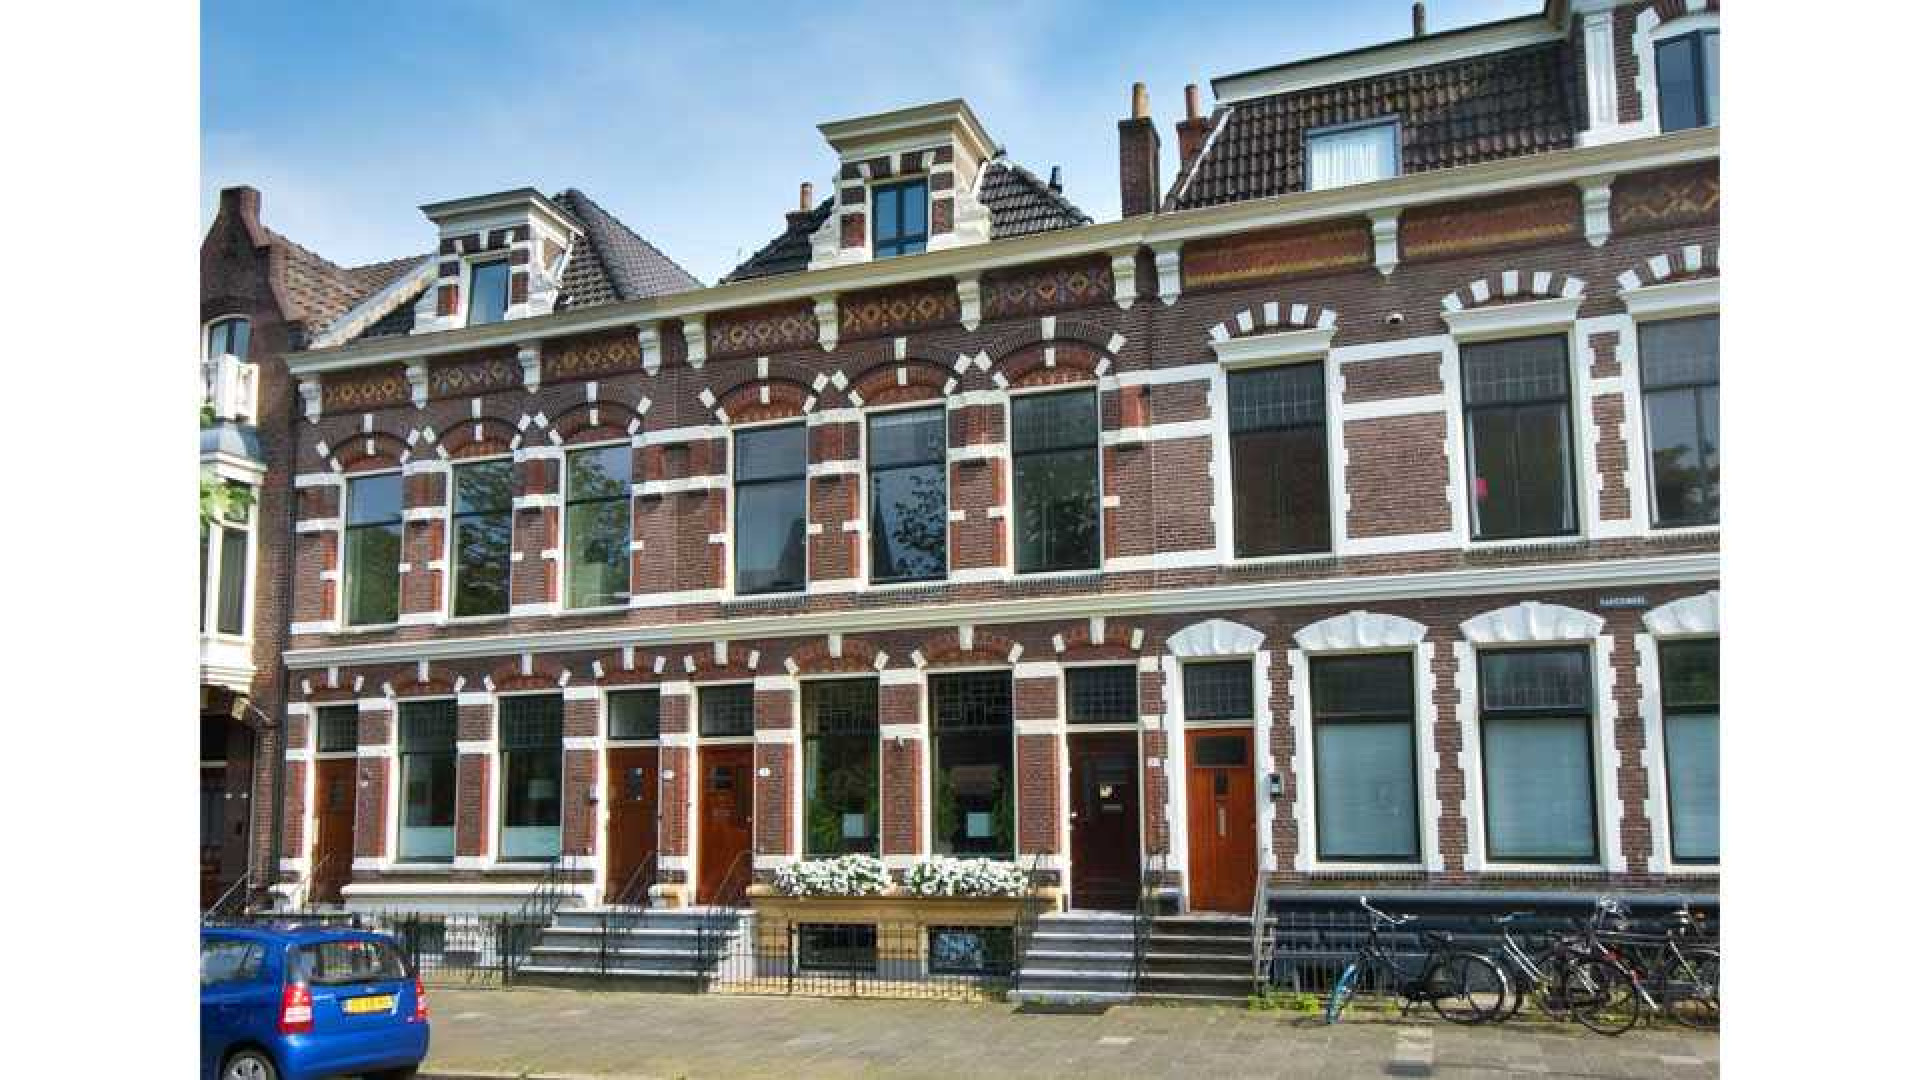 Victoria Koblenko en haar vriend Levchenko verkopen hun dubbel bovenhuis in Groningen. Zie foto's 1